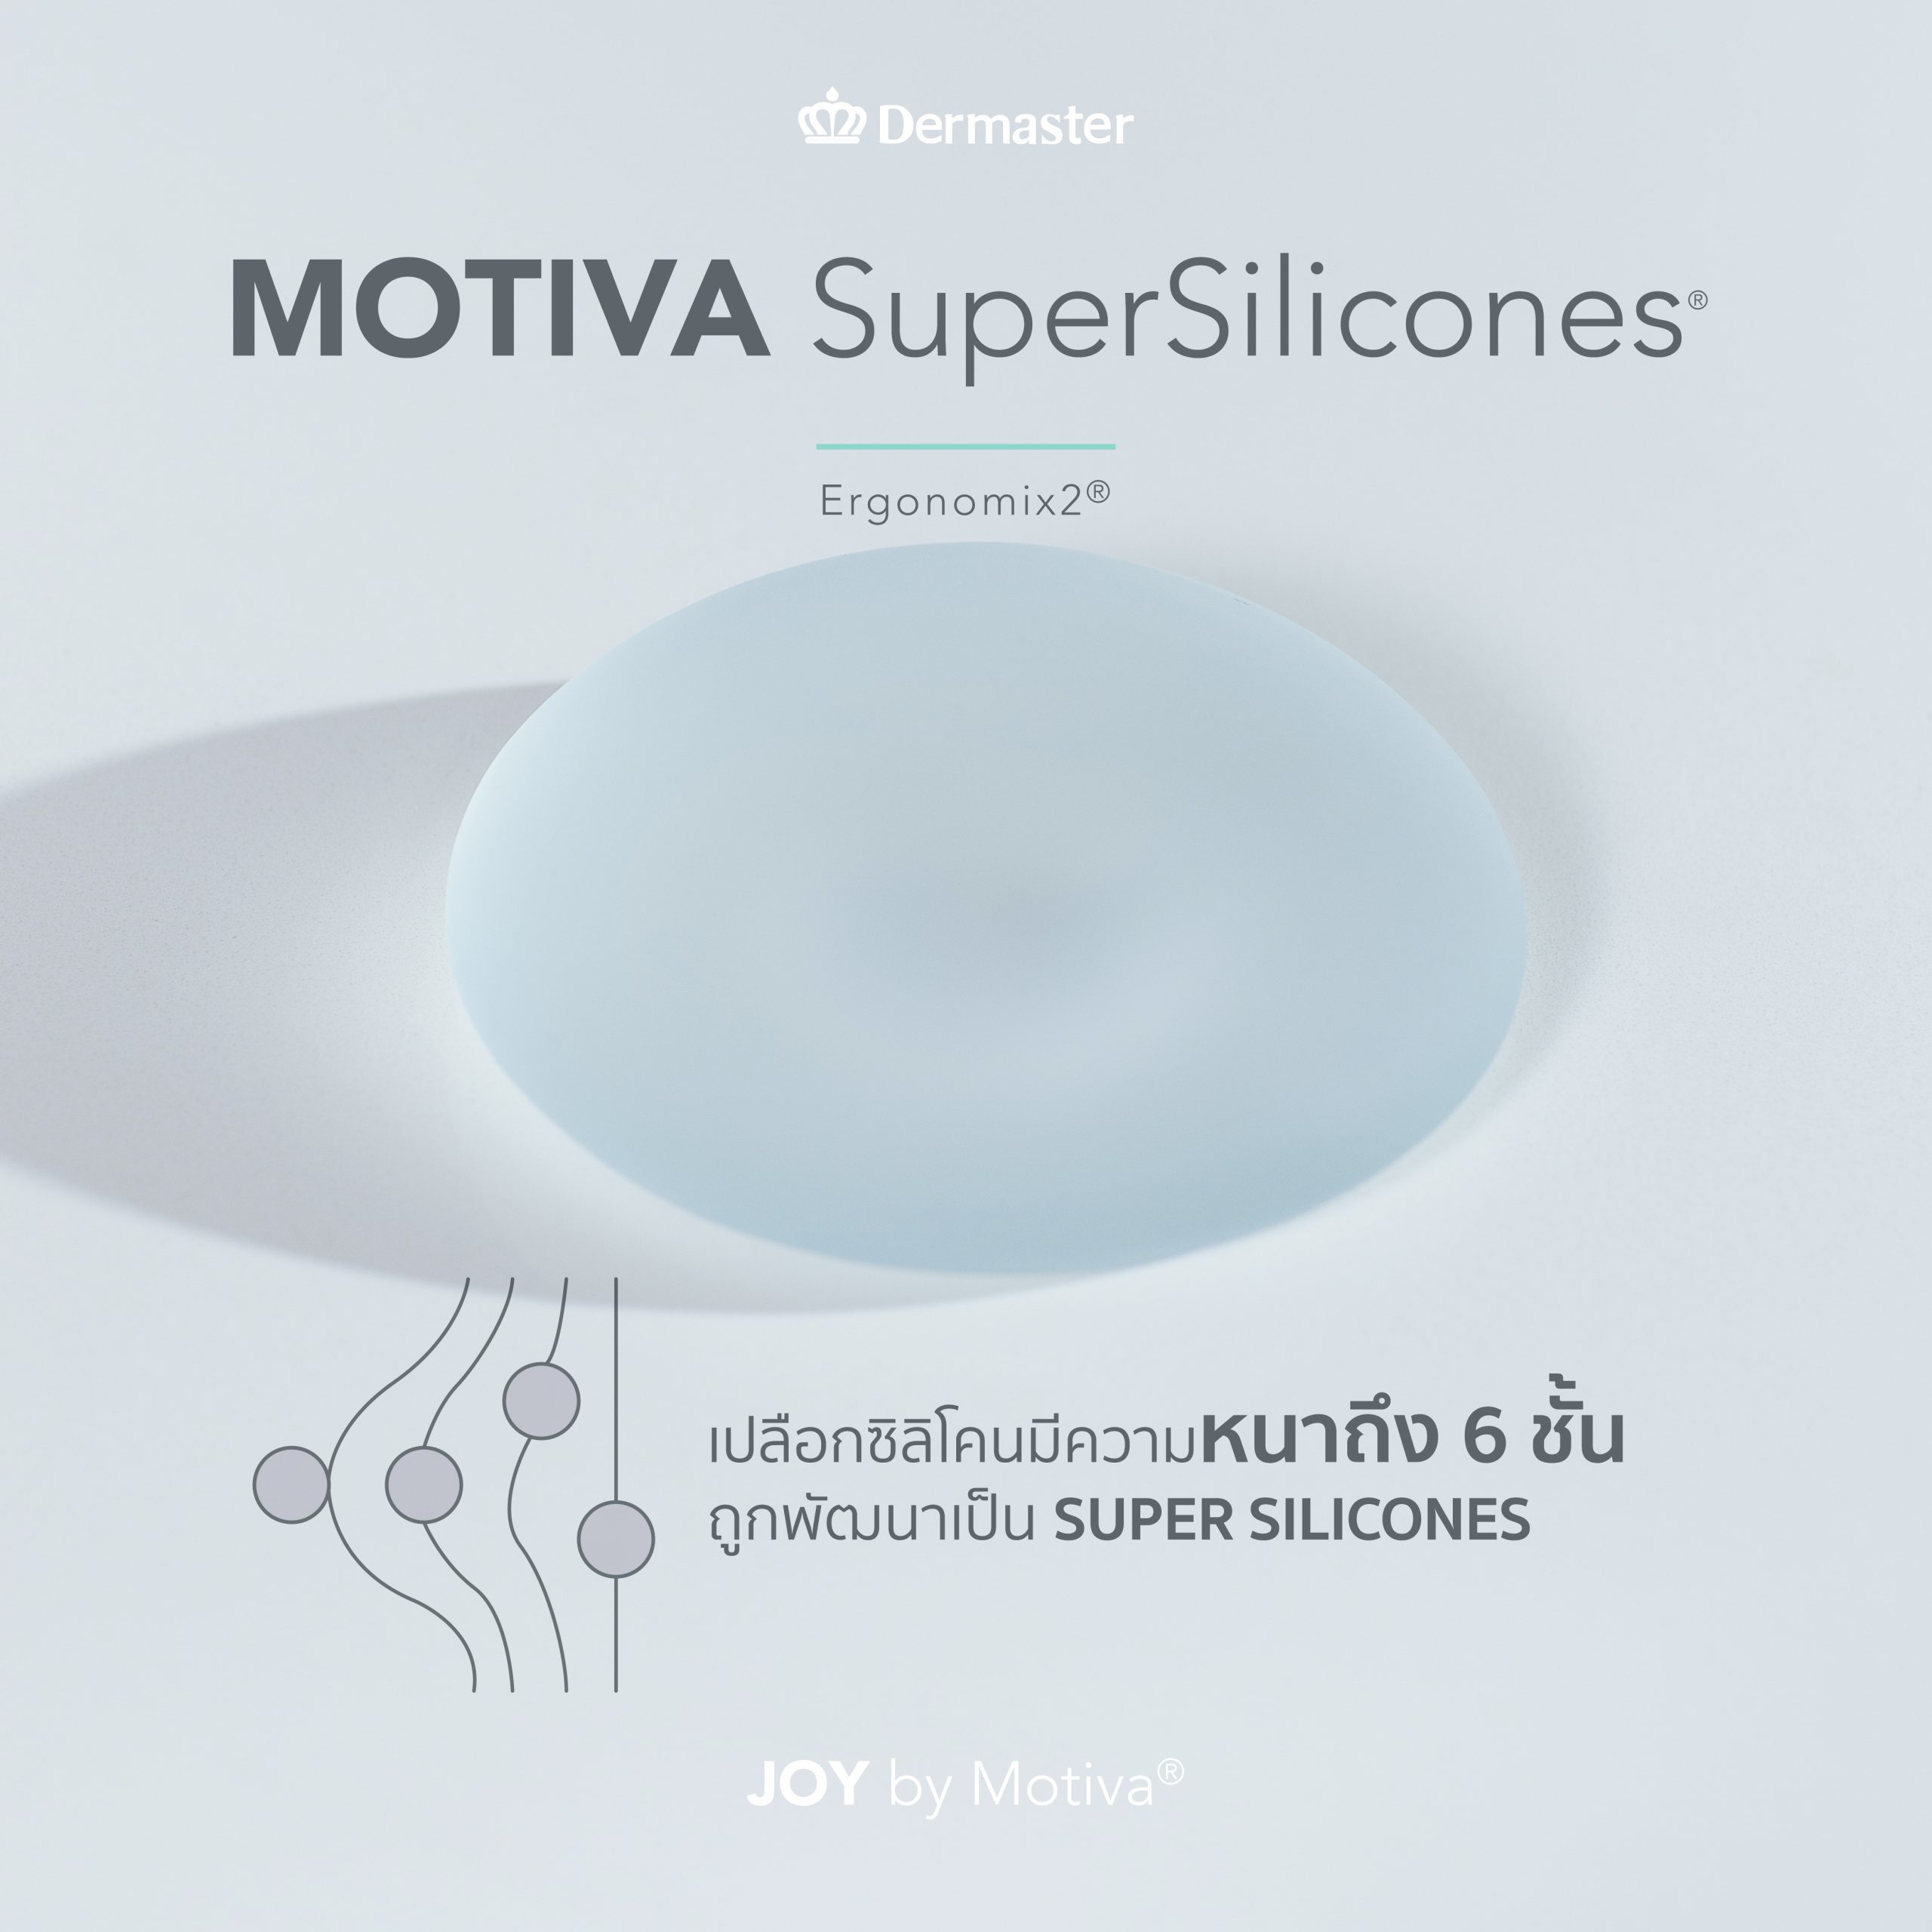 รูปภาพซิลิโคน Motiva SuperSilicones (Motiva Ergonomix2 หรือ Motiva Joy)